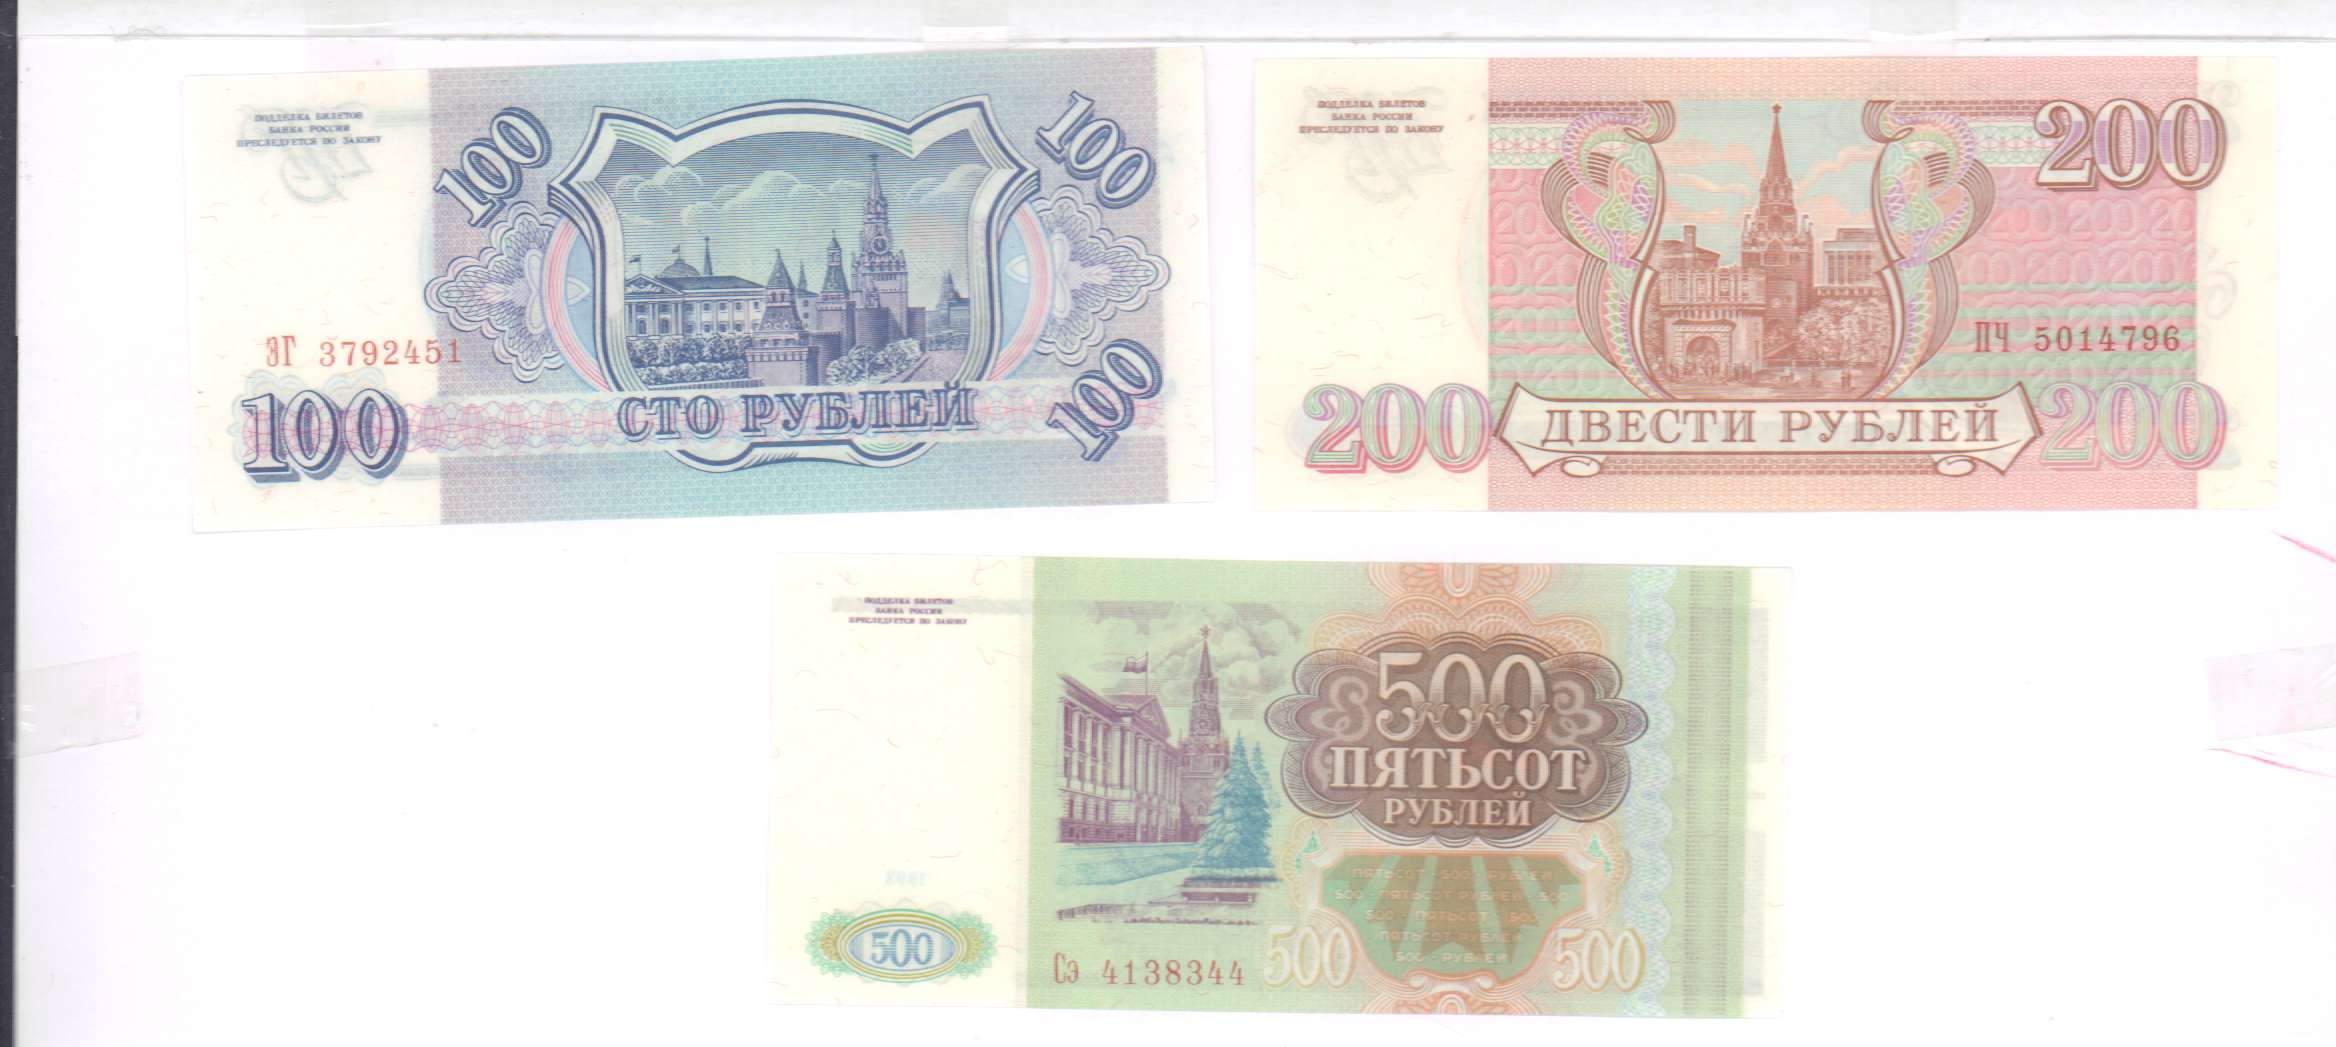 80 рублей 30. 100 Рублей 1993 Аверс-Аверс. 100 Рублей 3 штуки. 500 Рублей 3 штуки. Как выглядят билеты банка России с кюаркодом.